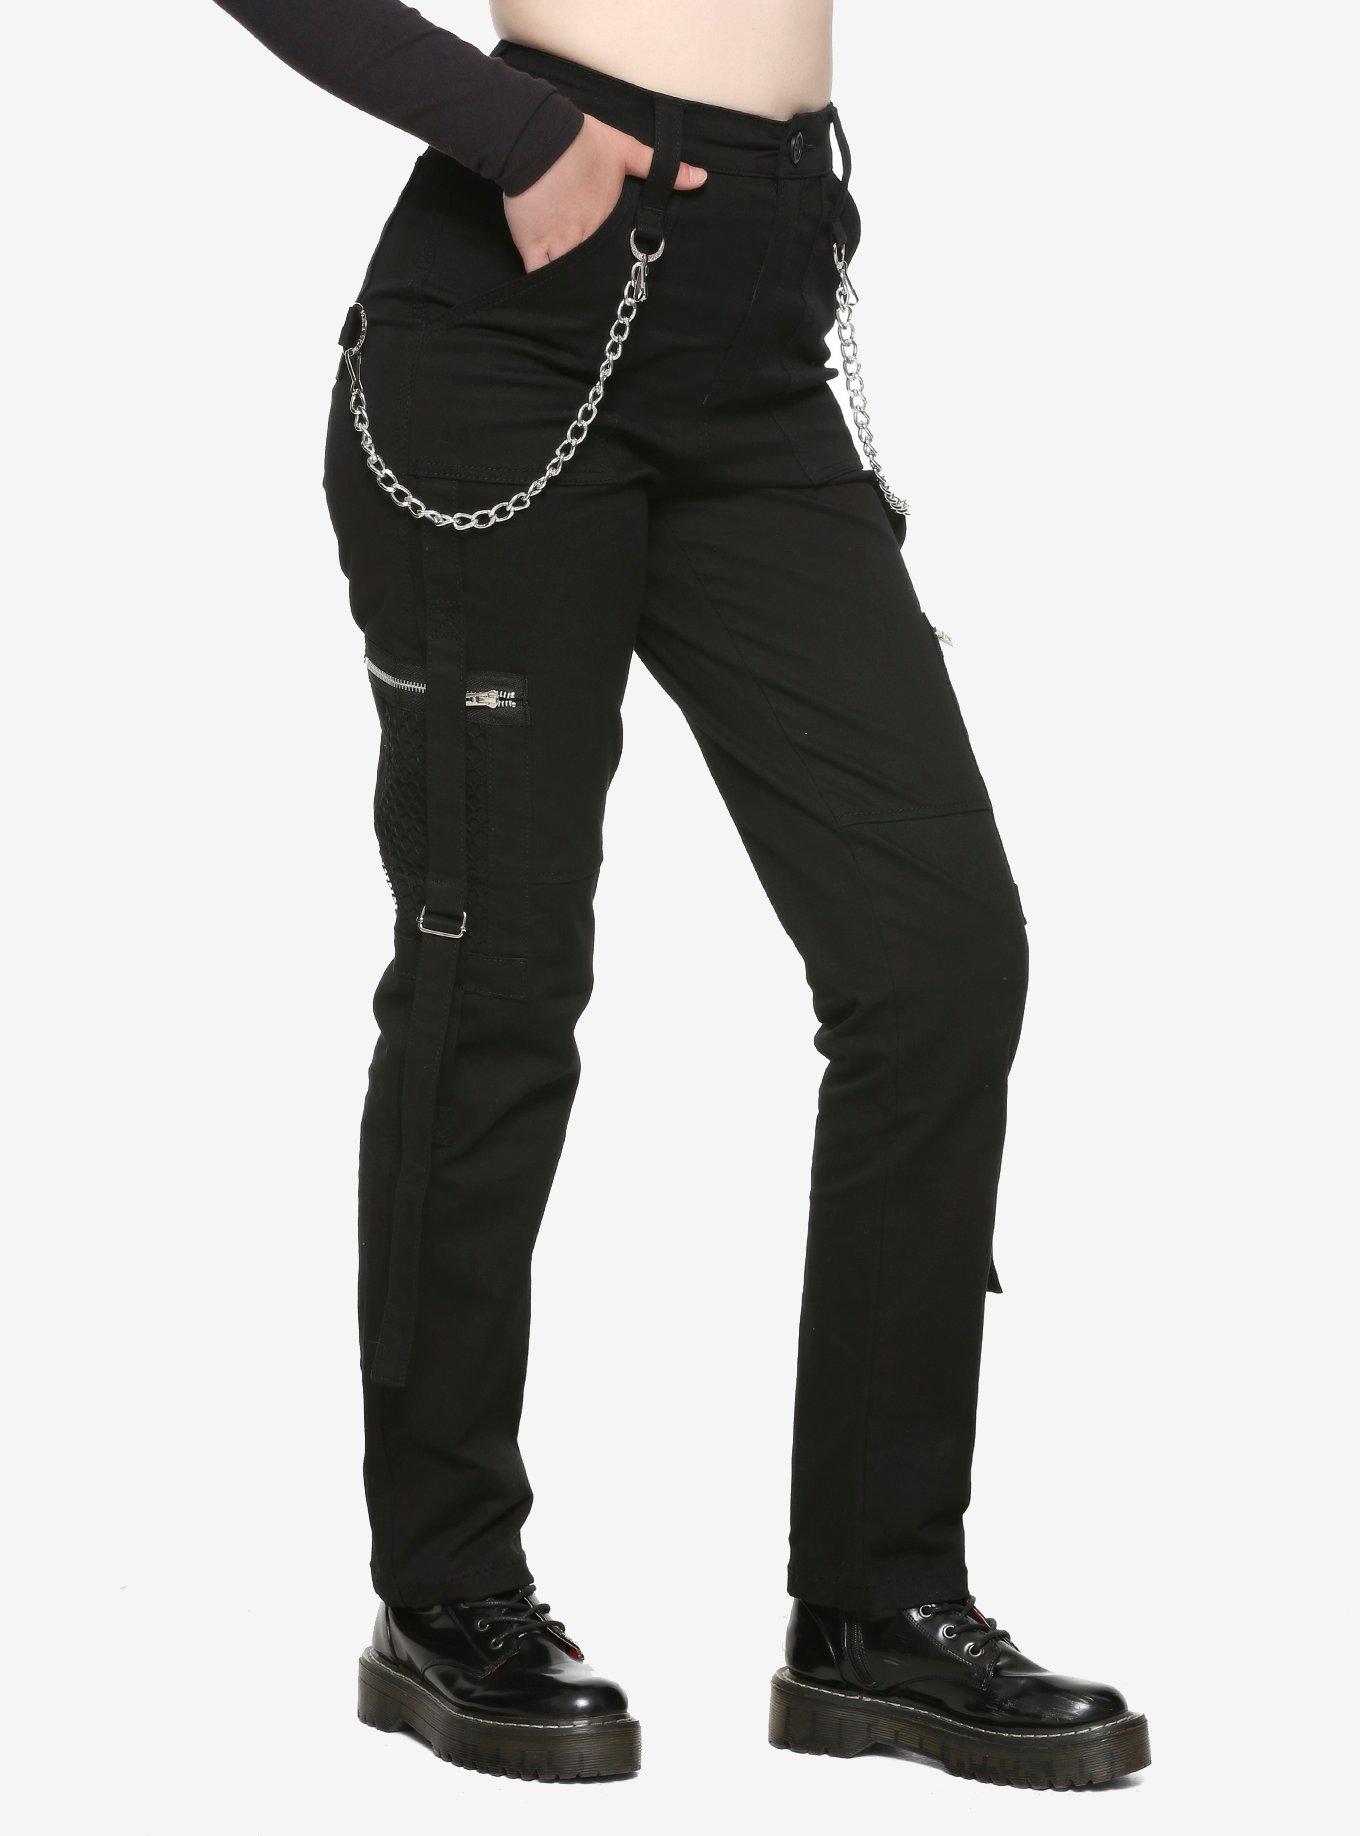 Royal Bones By Tripp Black Strap Skinny Jeans Plus Size